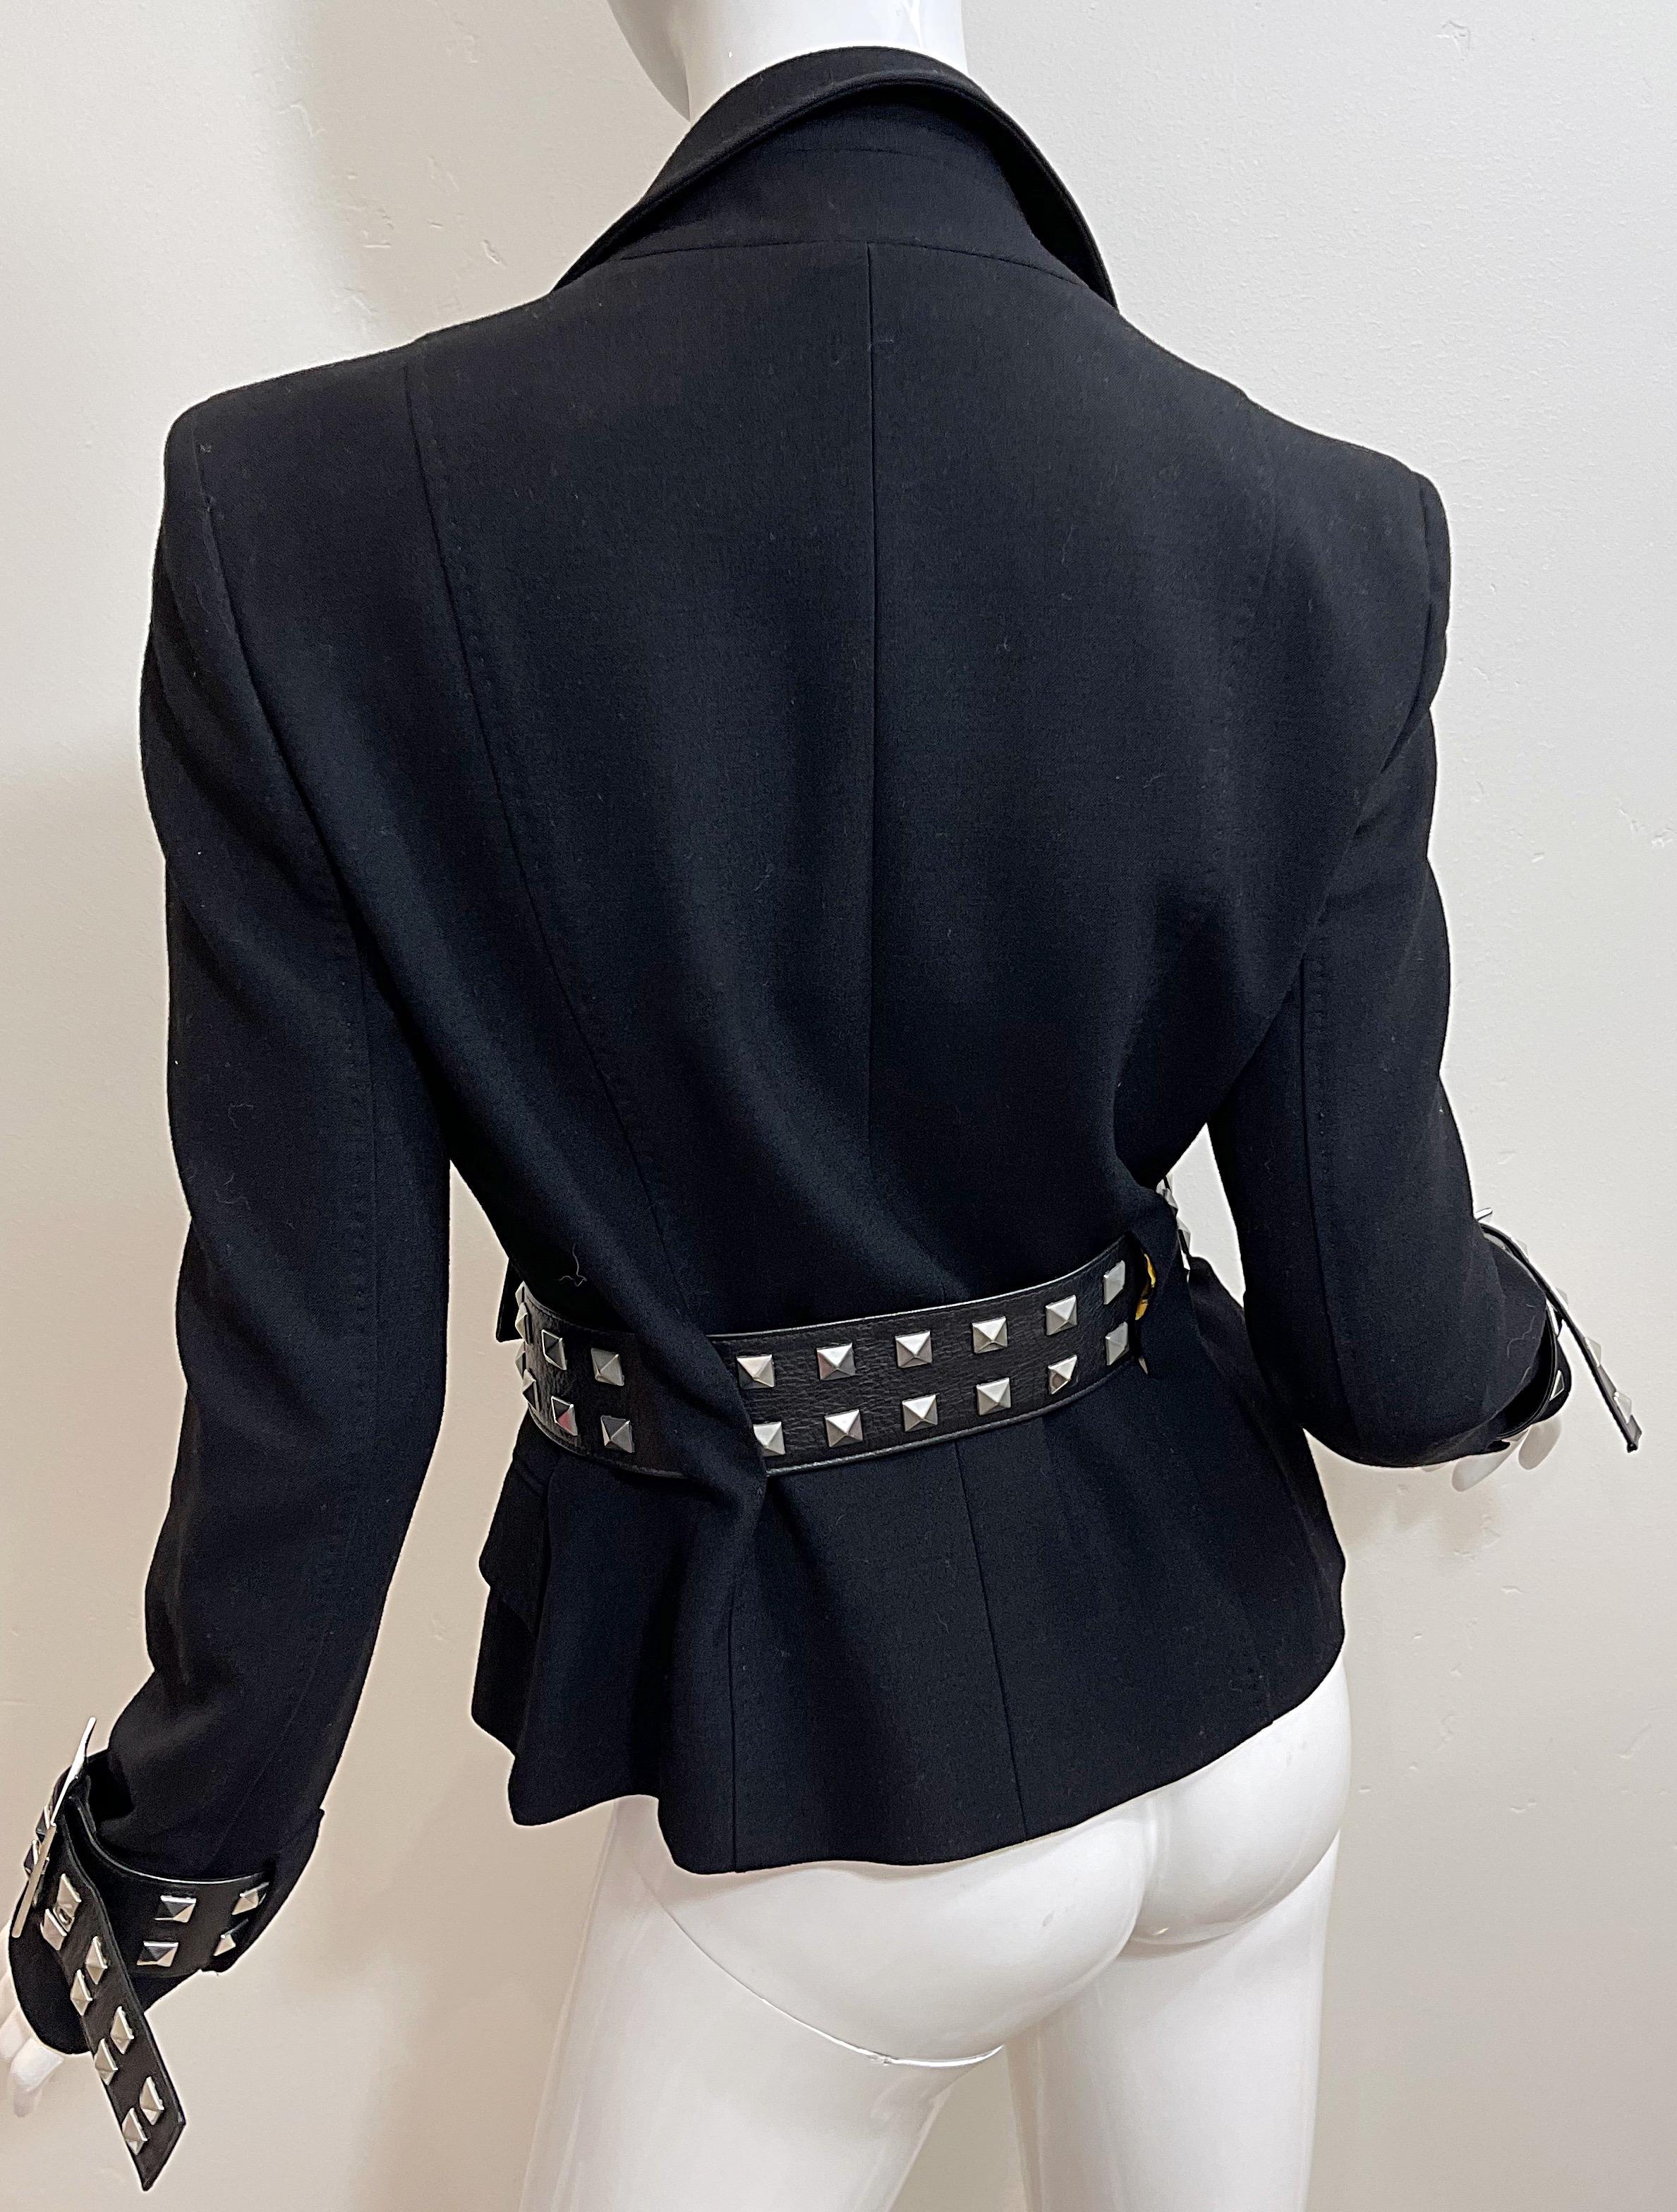 Gianni Versace 2000s Y2K Bondage Inspired Size 44 / 8 Belted Blazer Jacket 2